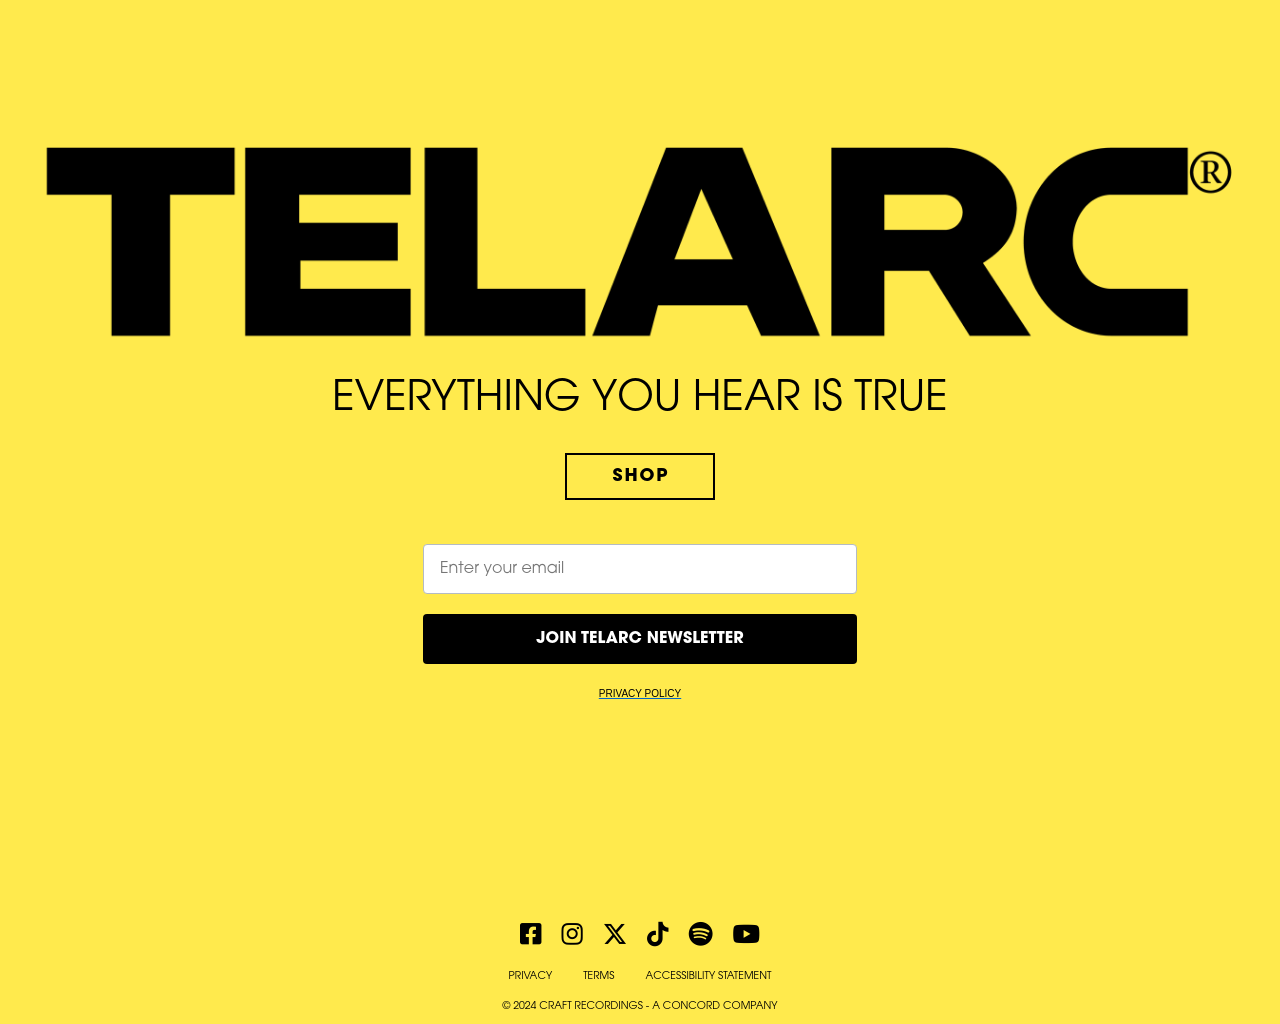 telarc.com